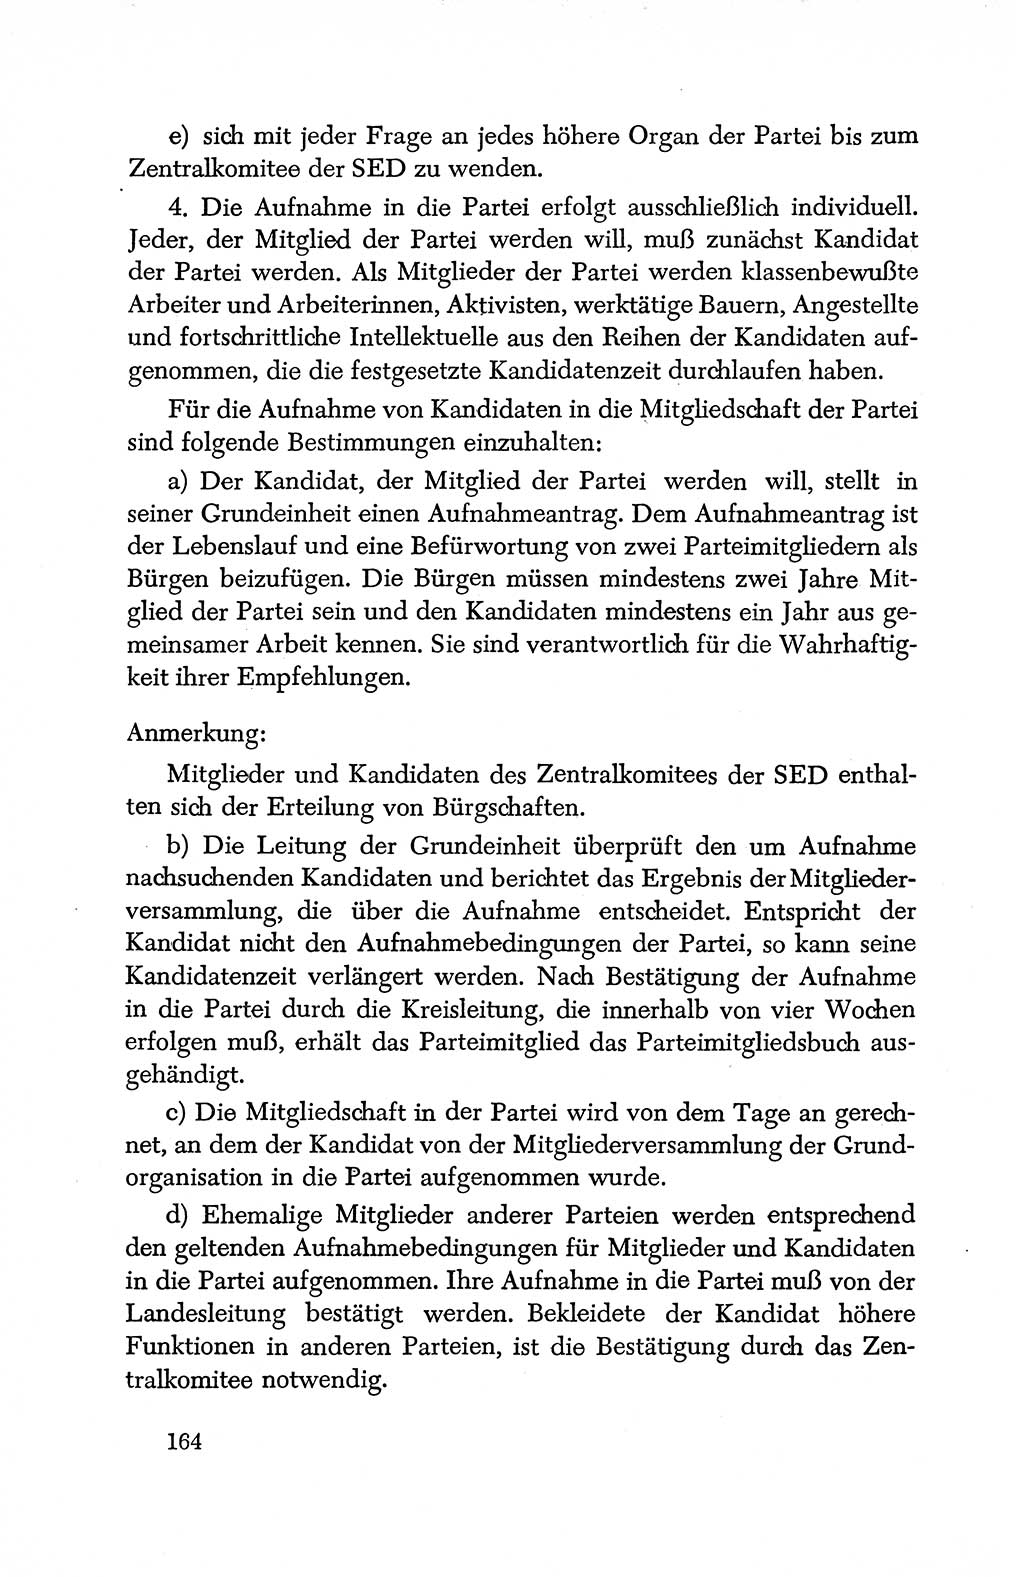 Dokumente der Sozialistischen Einheitspartei Deutschlands (SED) [Deutsche Demokratische Republik (DDR)] 1950-1952, Seite 164 (Dok. SED DDR 1950-1952, S. 164)